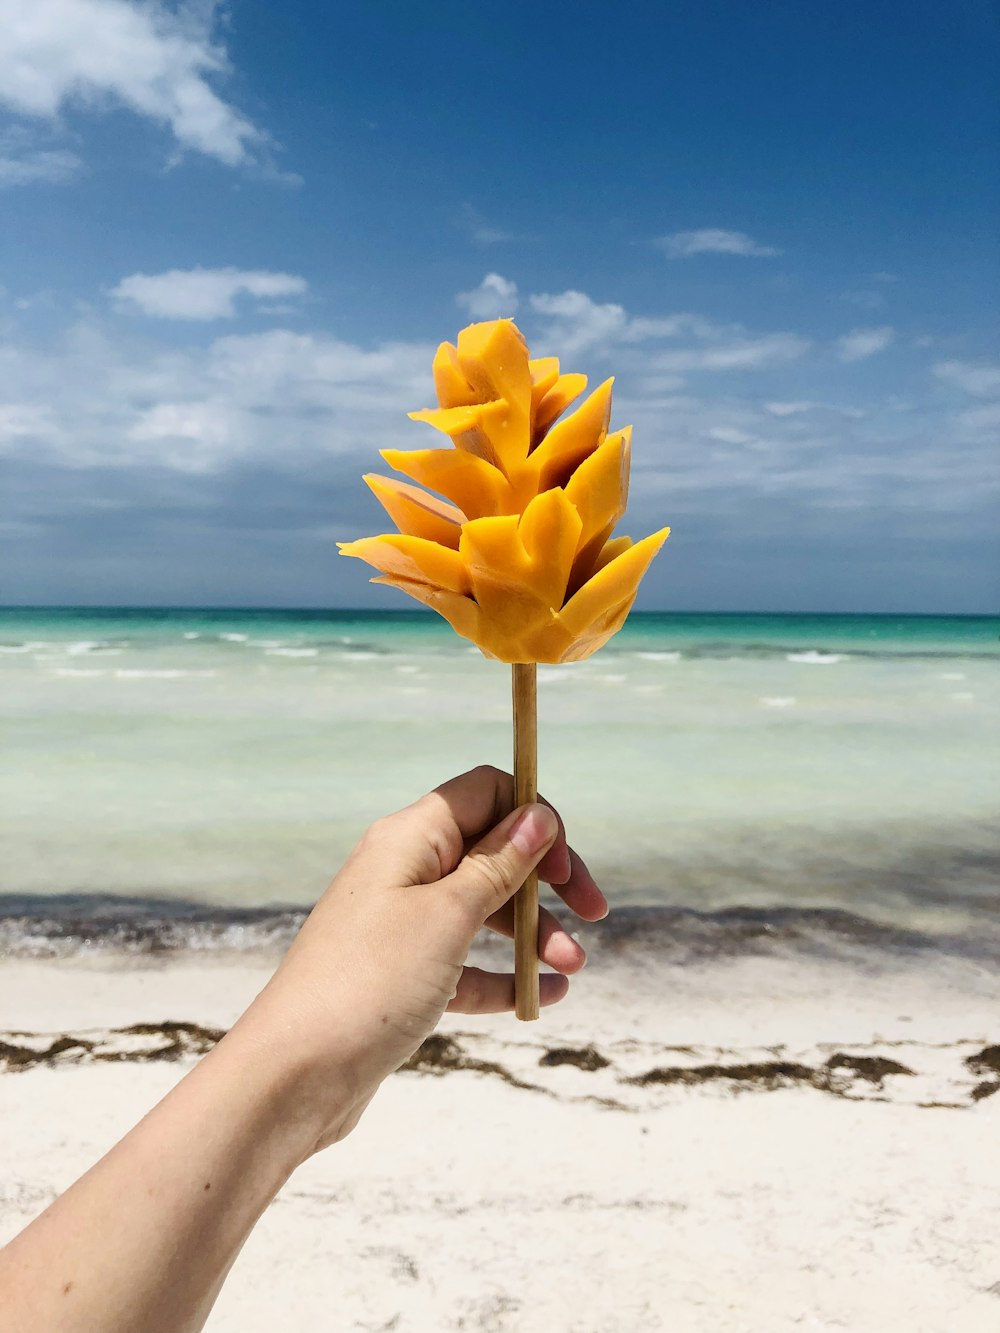 Una mano sosteniendo una flor amarilla en una playa